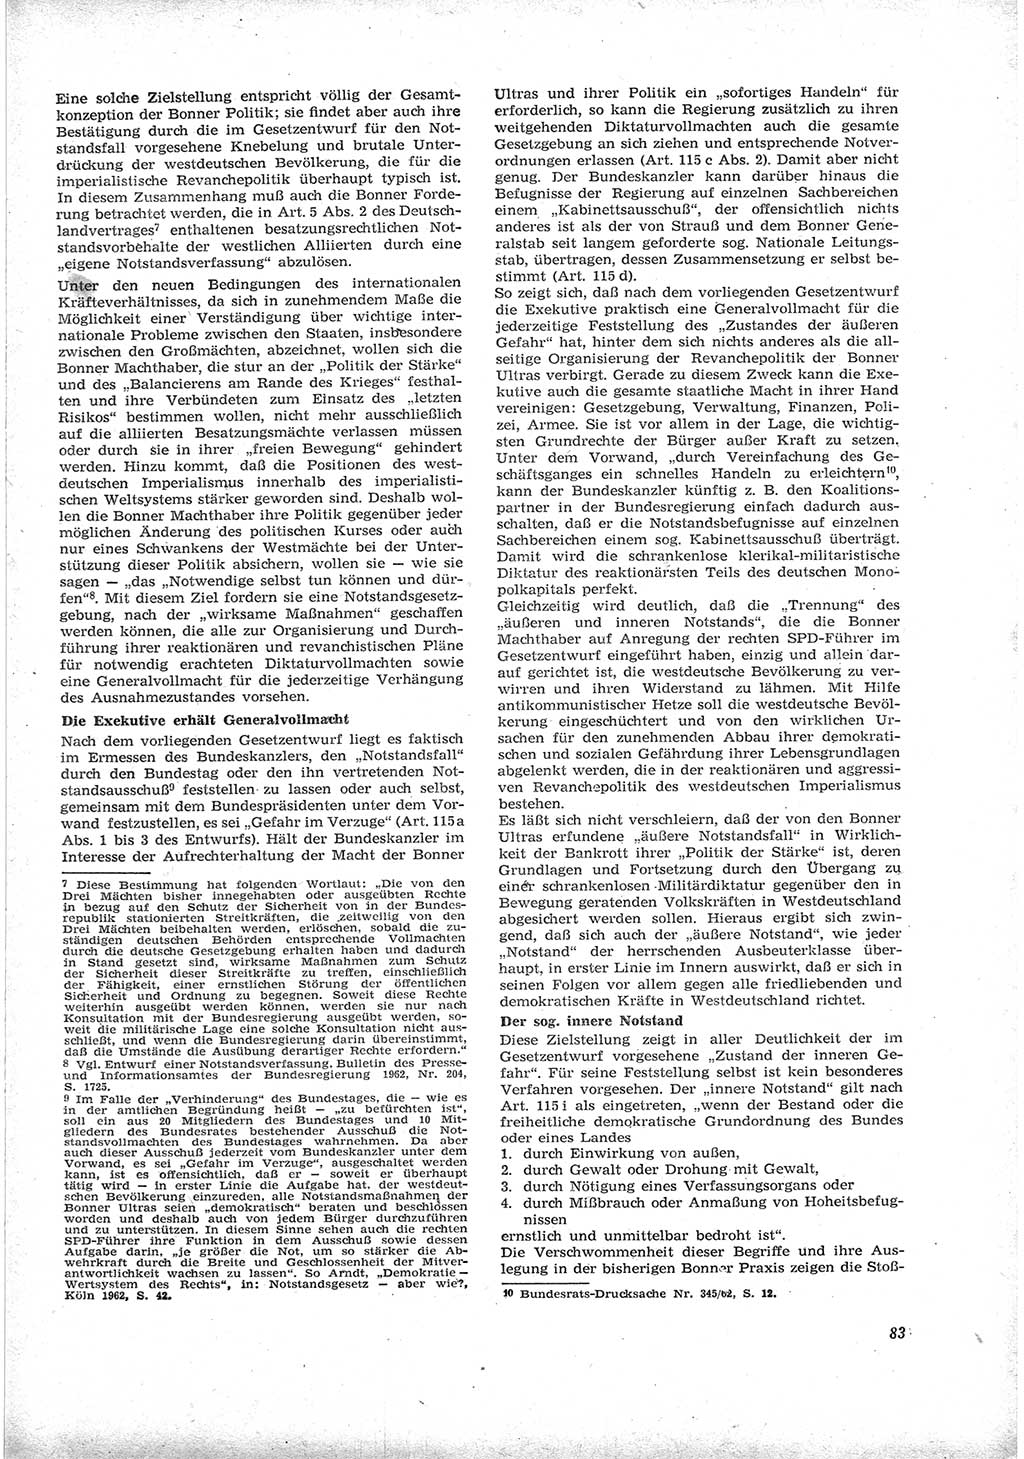 Neue Justiz (NJ), Zeitschrift für Recht und Rechtswissenschaft [Deutsche Demokratische Republik (DDR)], 17. Jahrgang 1963, Seite 83 (NJ DDR 1963, S. 83)